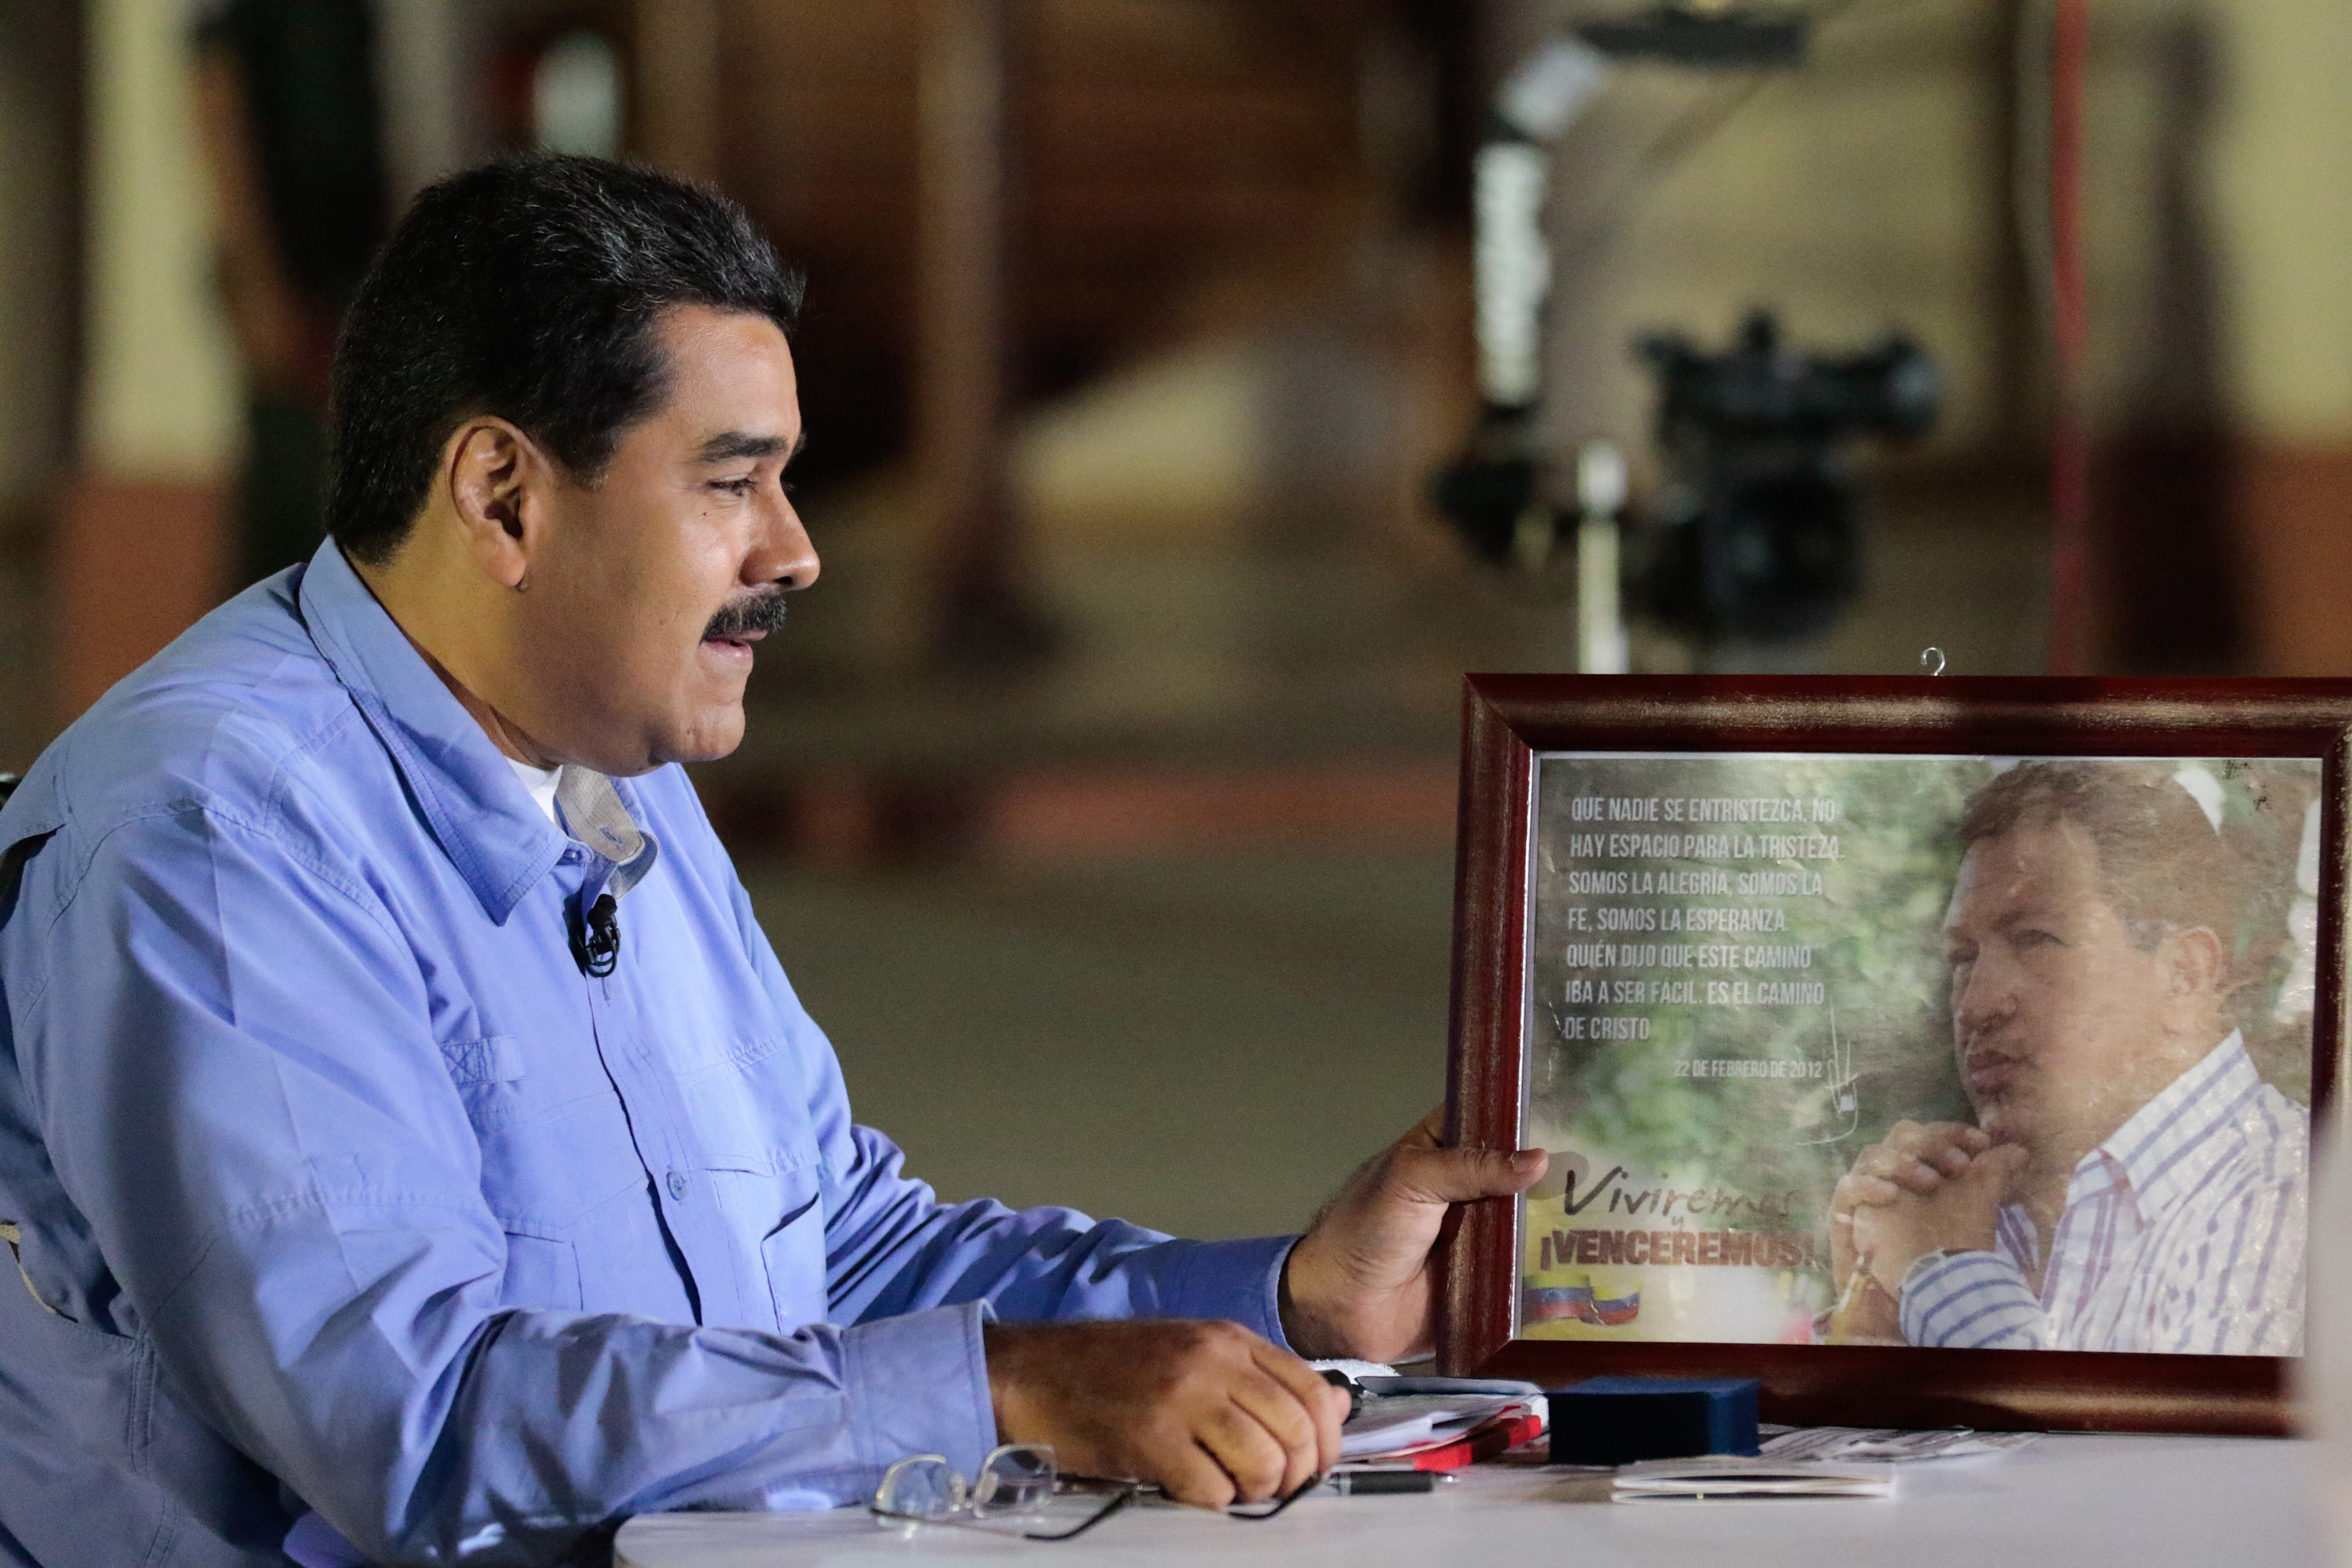 El presidente de Venezuela, Nicolás Maduro denunció los planes de la derecha contra la integración latinoamericana y caribeña.